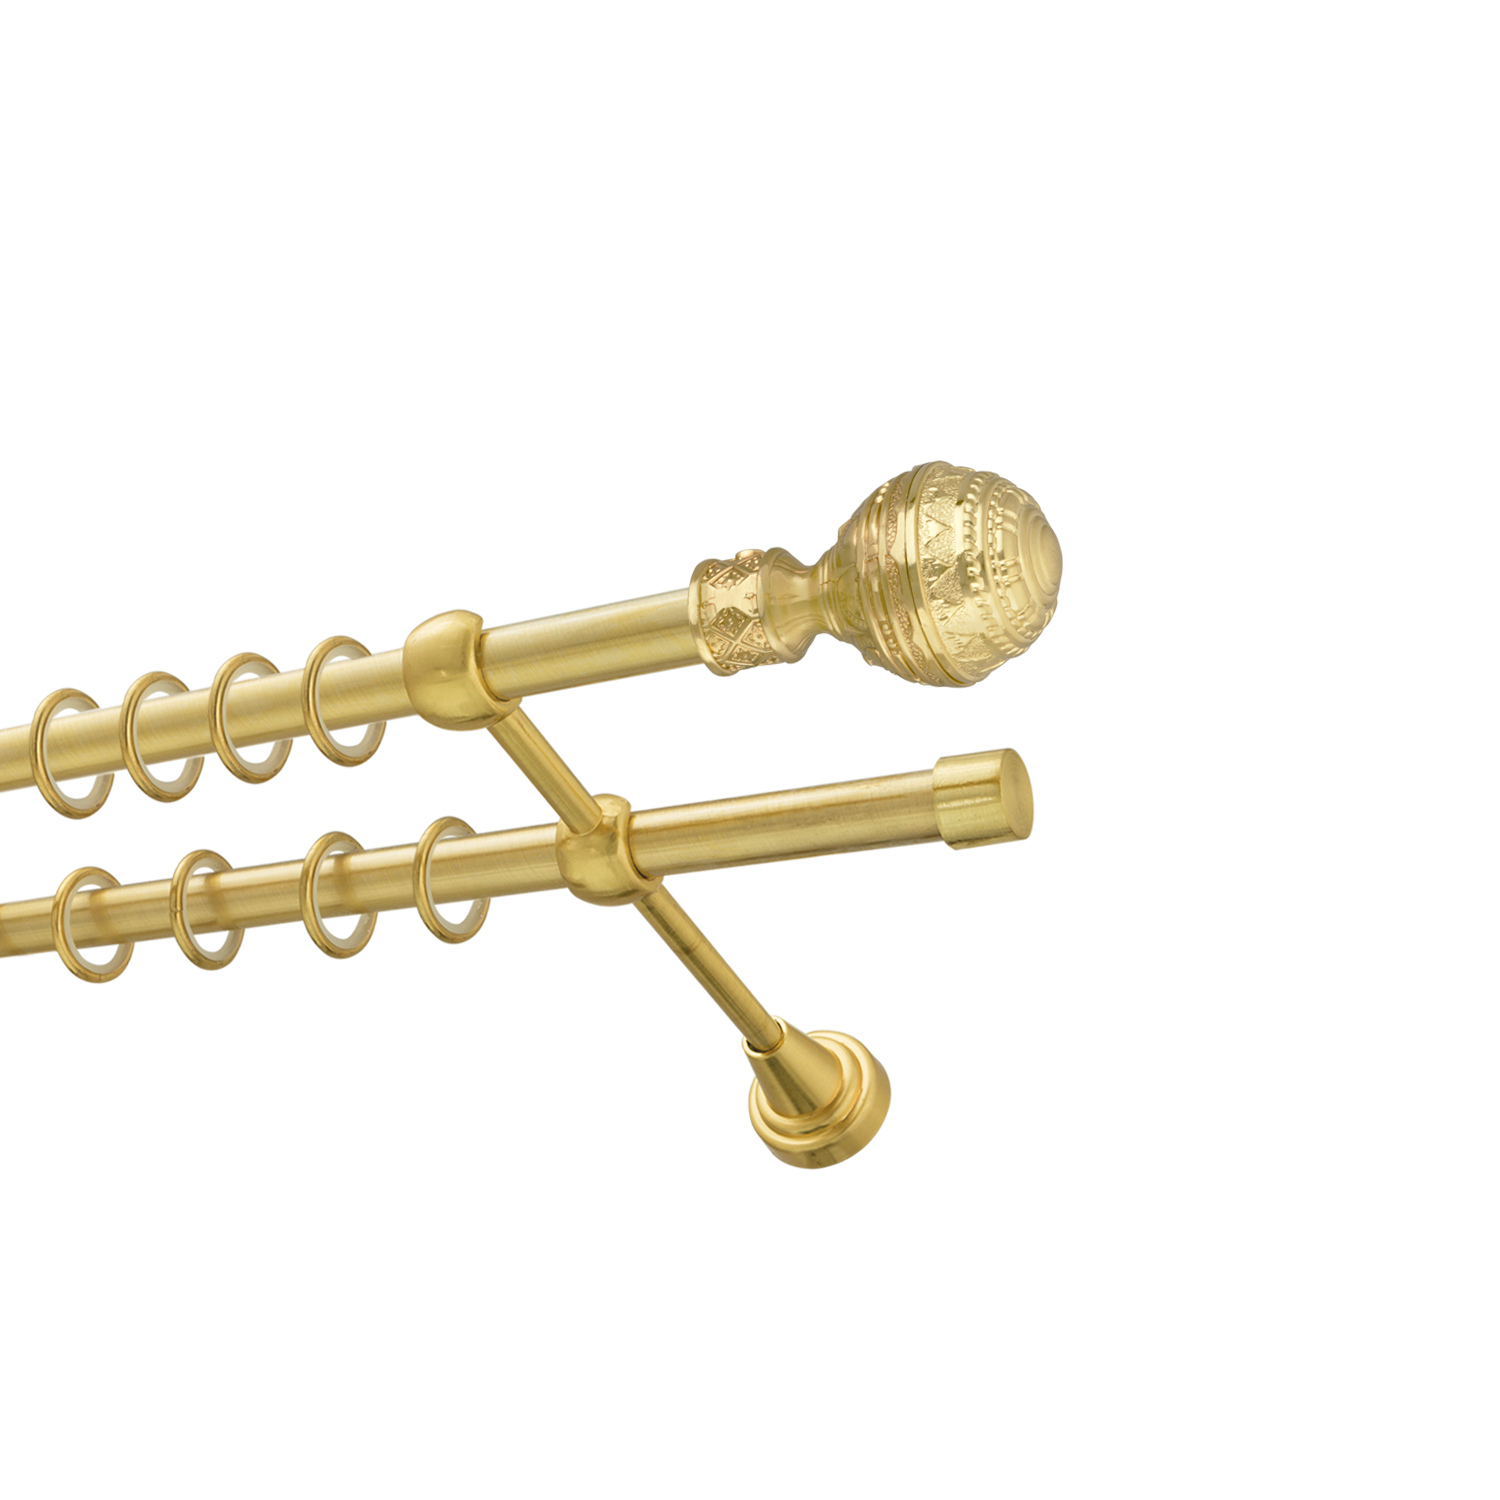 Металлический карниз для штор Роял, двухрядный 16/16 мм, золото, гладкая штанга, длина 180 см - фото Wikidecor.ru